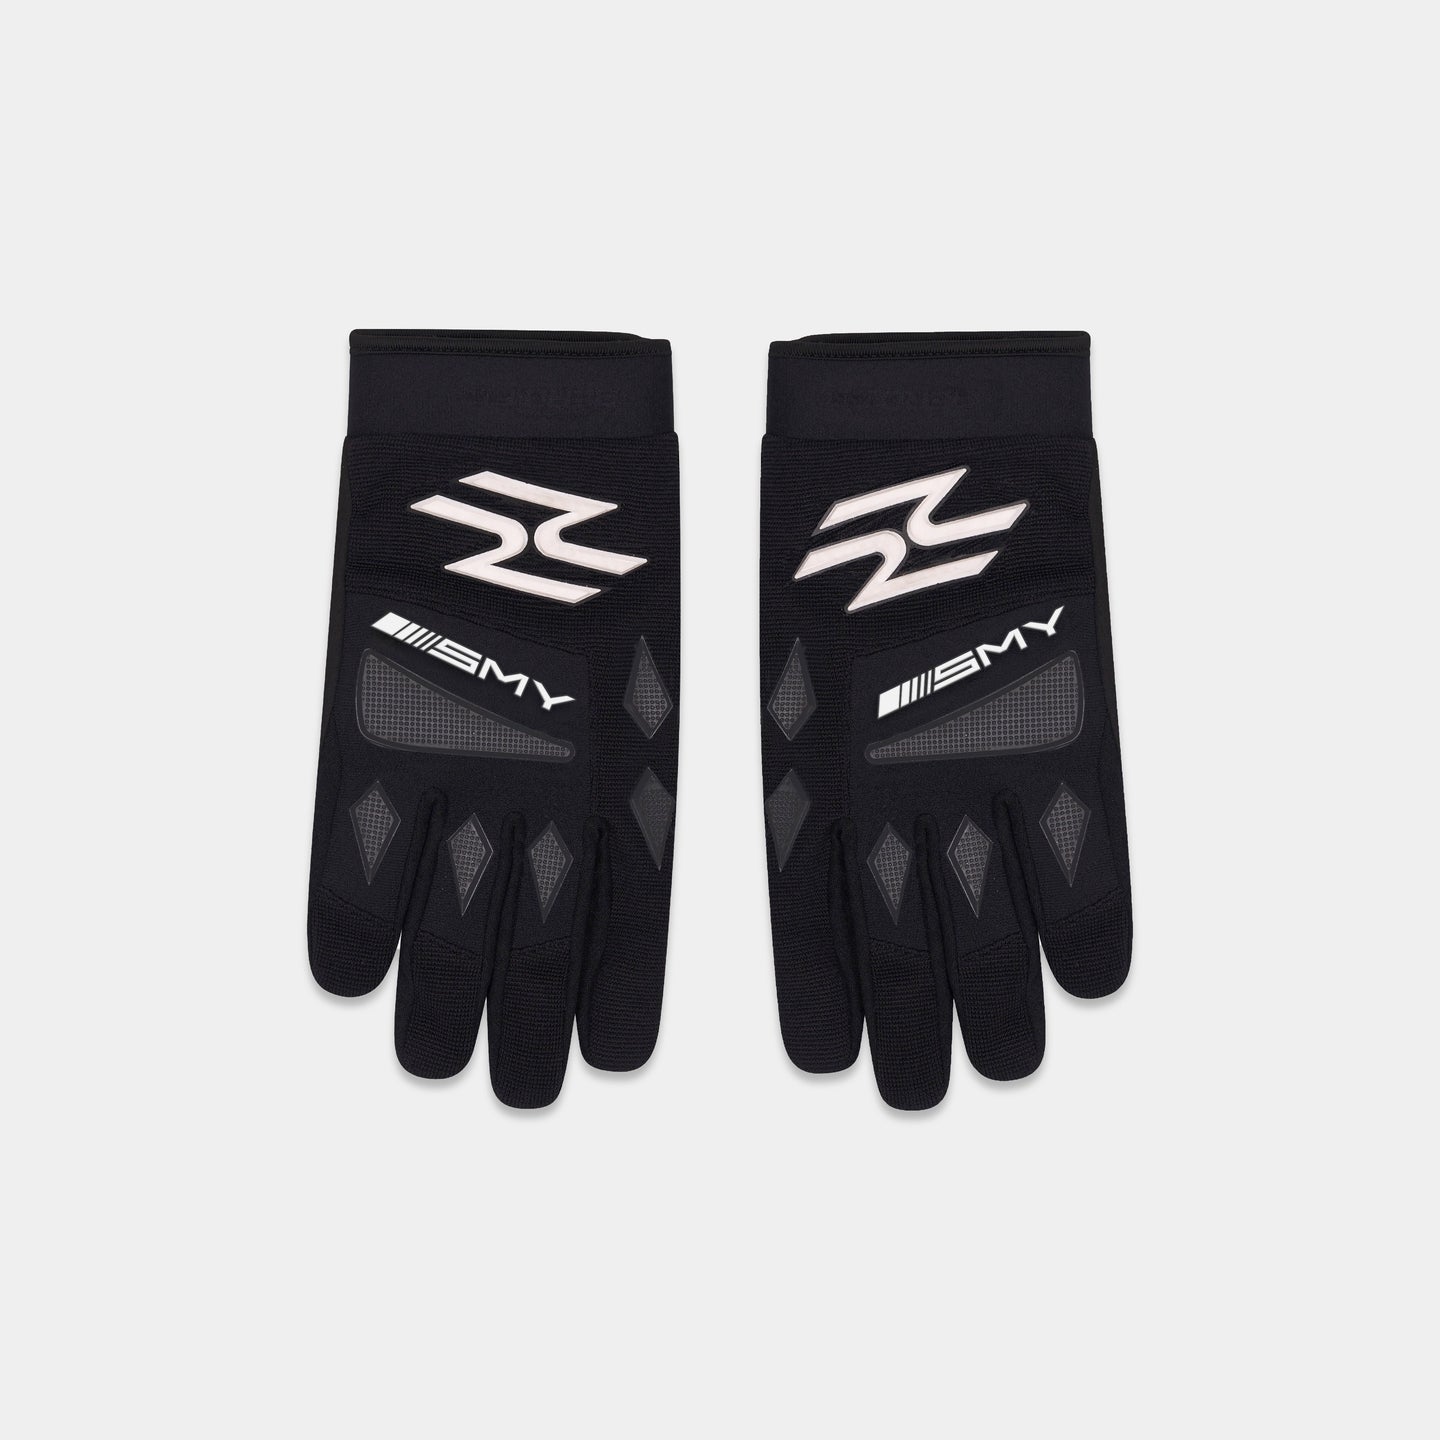 SMYRNASMY-MX Moto gloves in black - Gloves